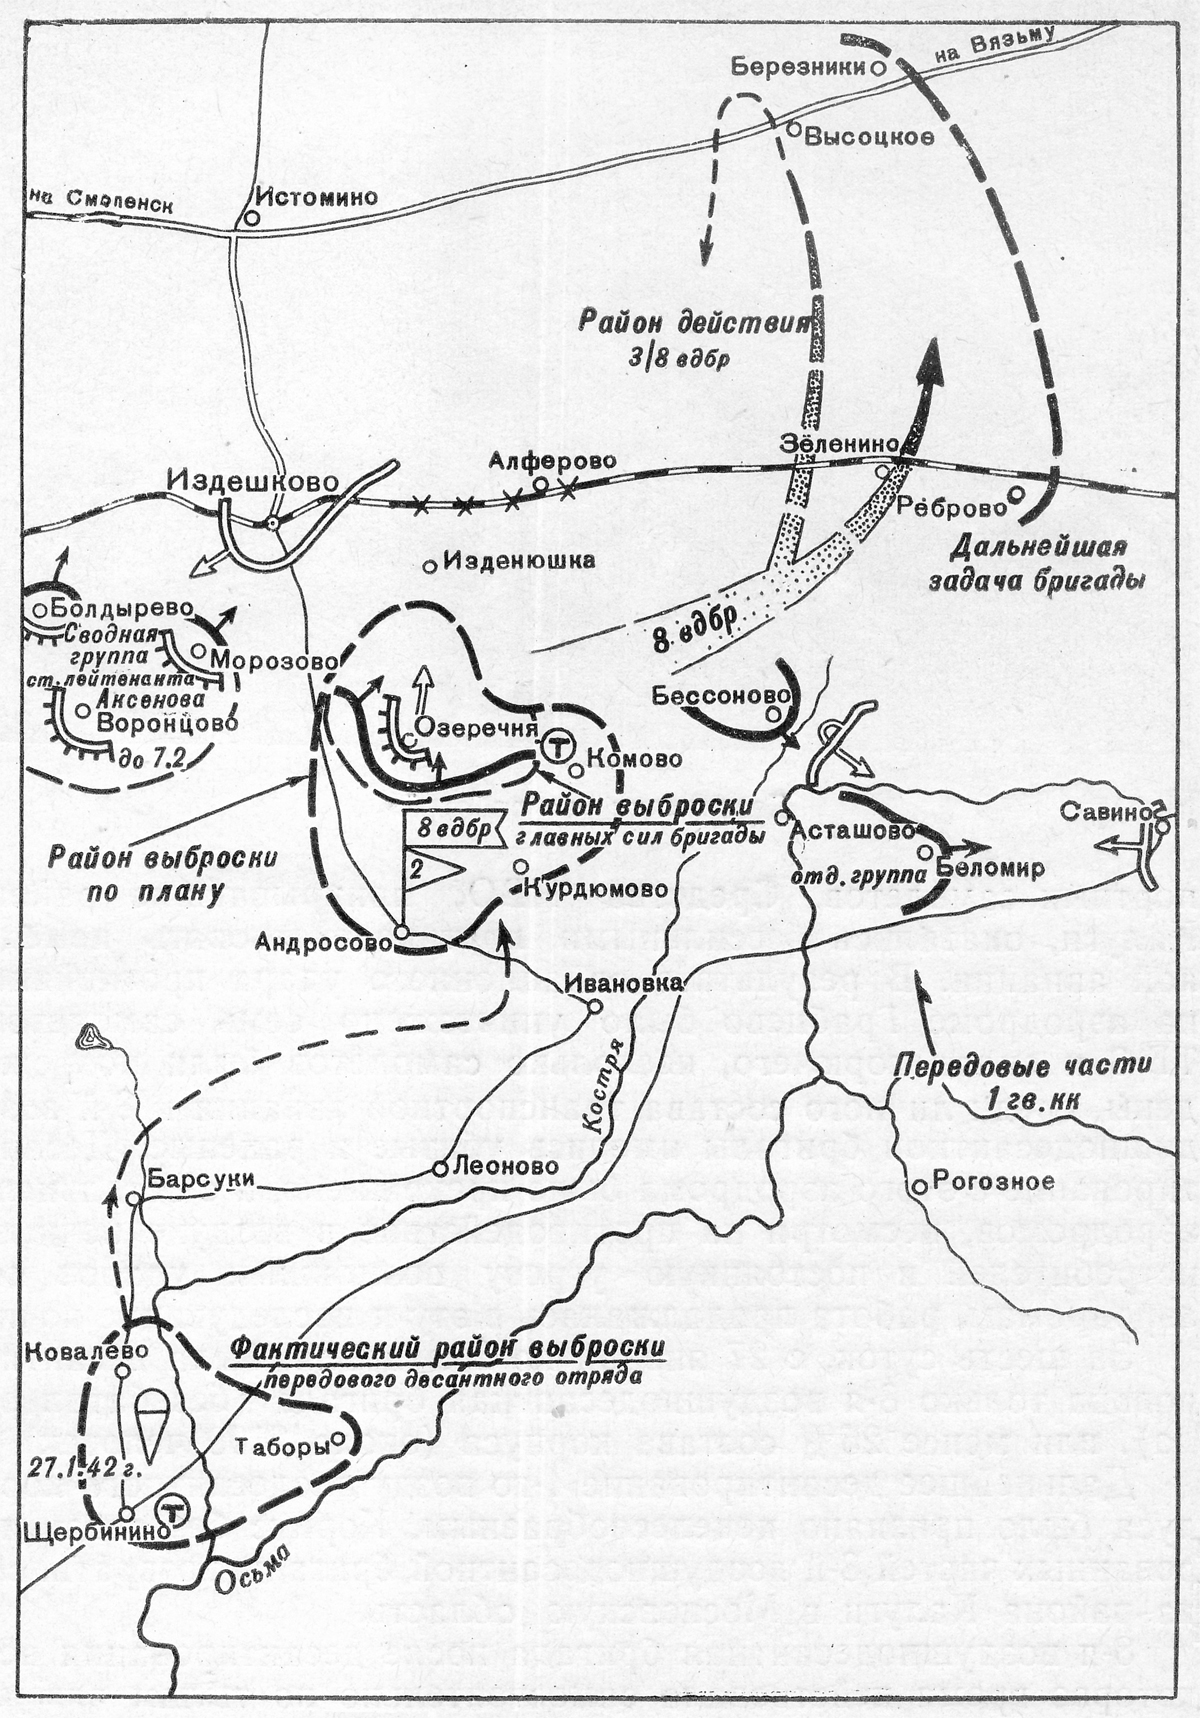 Боевые действия передового отряда 8-й ВДБР в январе - феврале 1942 года